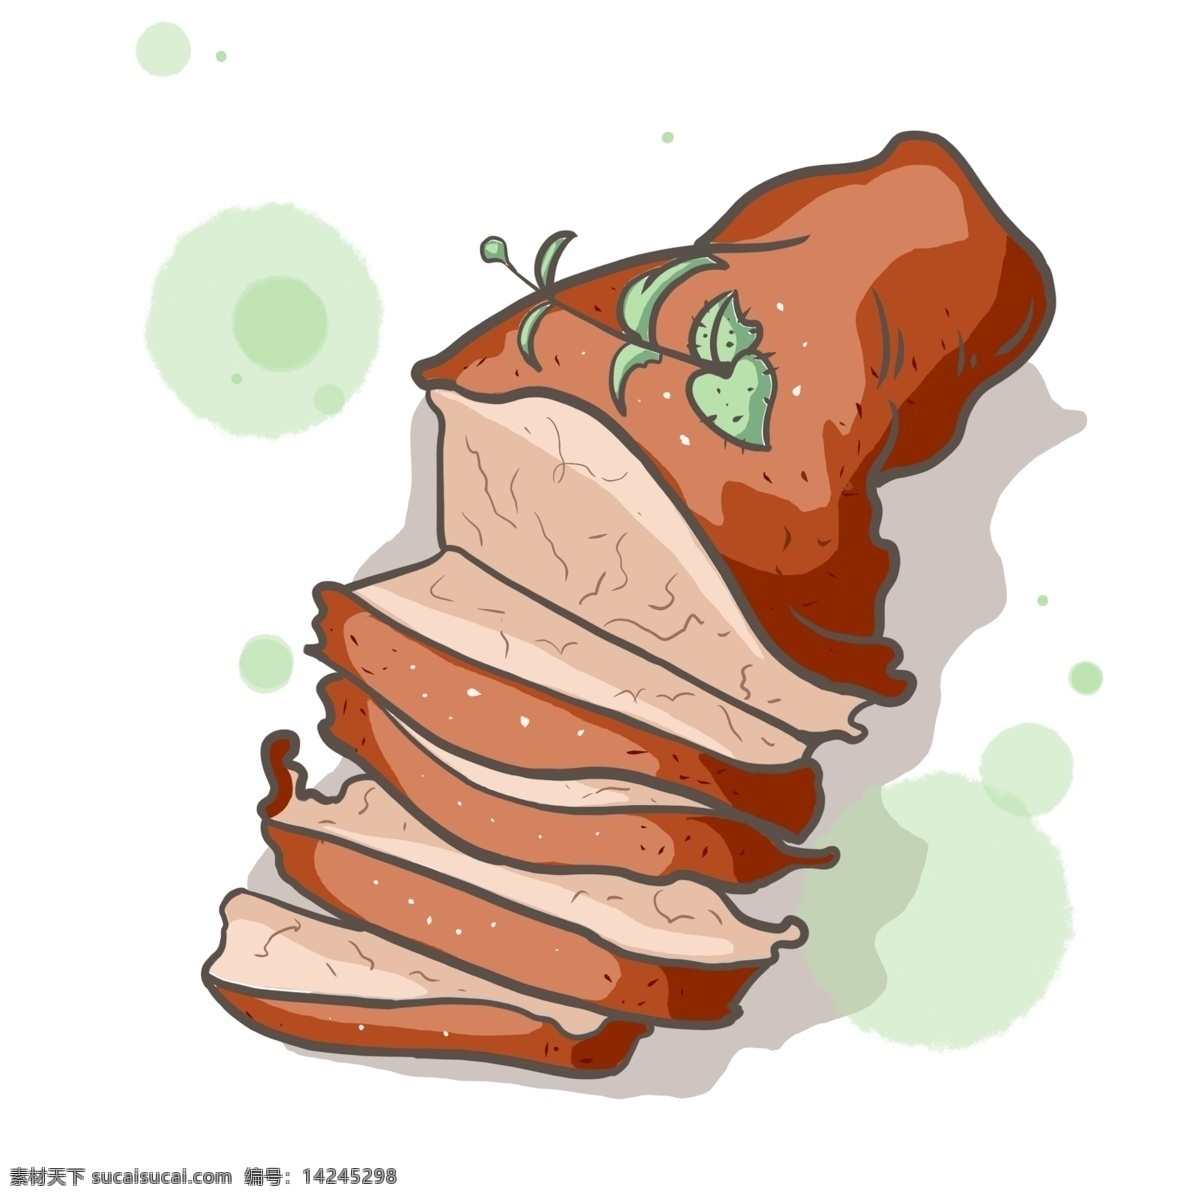 新鲜 牛肉 装饰 插画 新鲜的牛肉 红色的牛肉 牛肉装饰 牛肉插画 立体牛肉 卡通牛肉 小吃牛肉